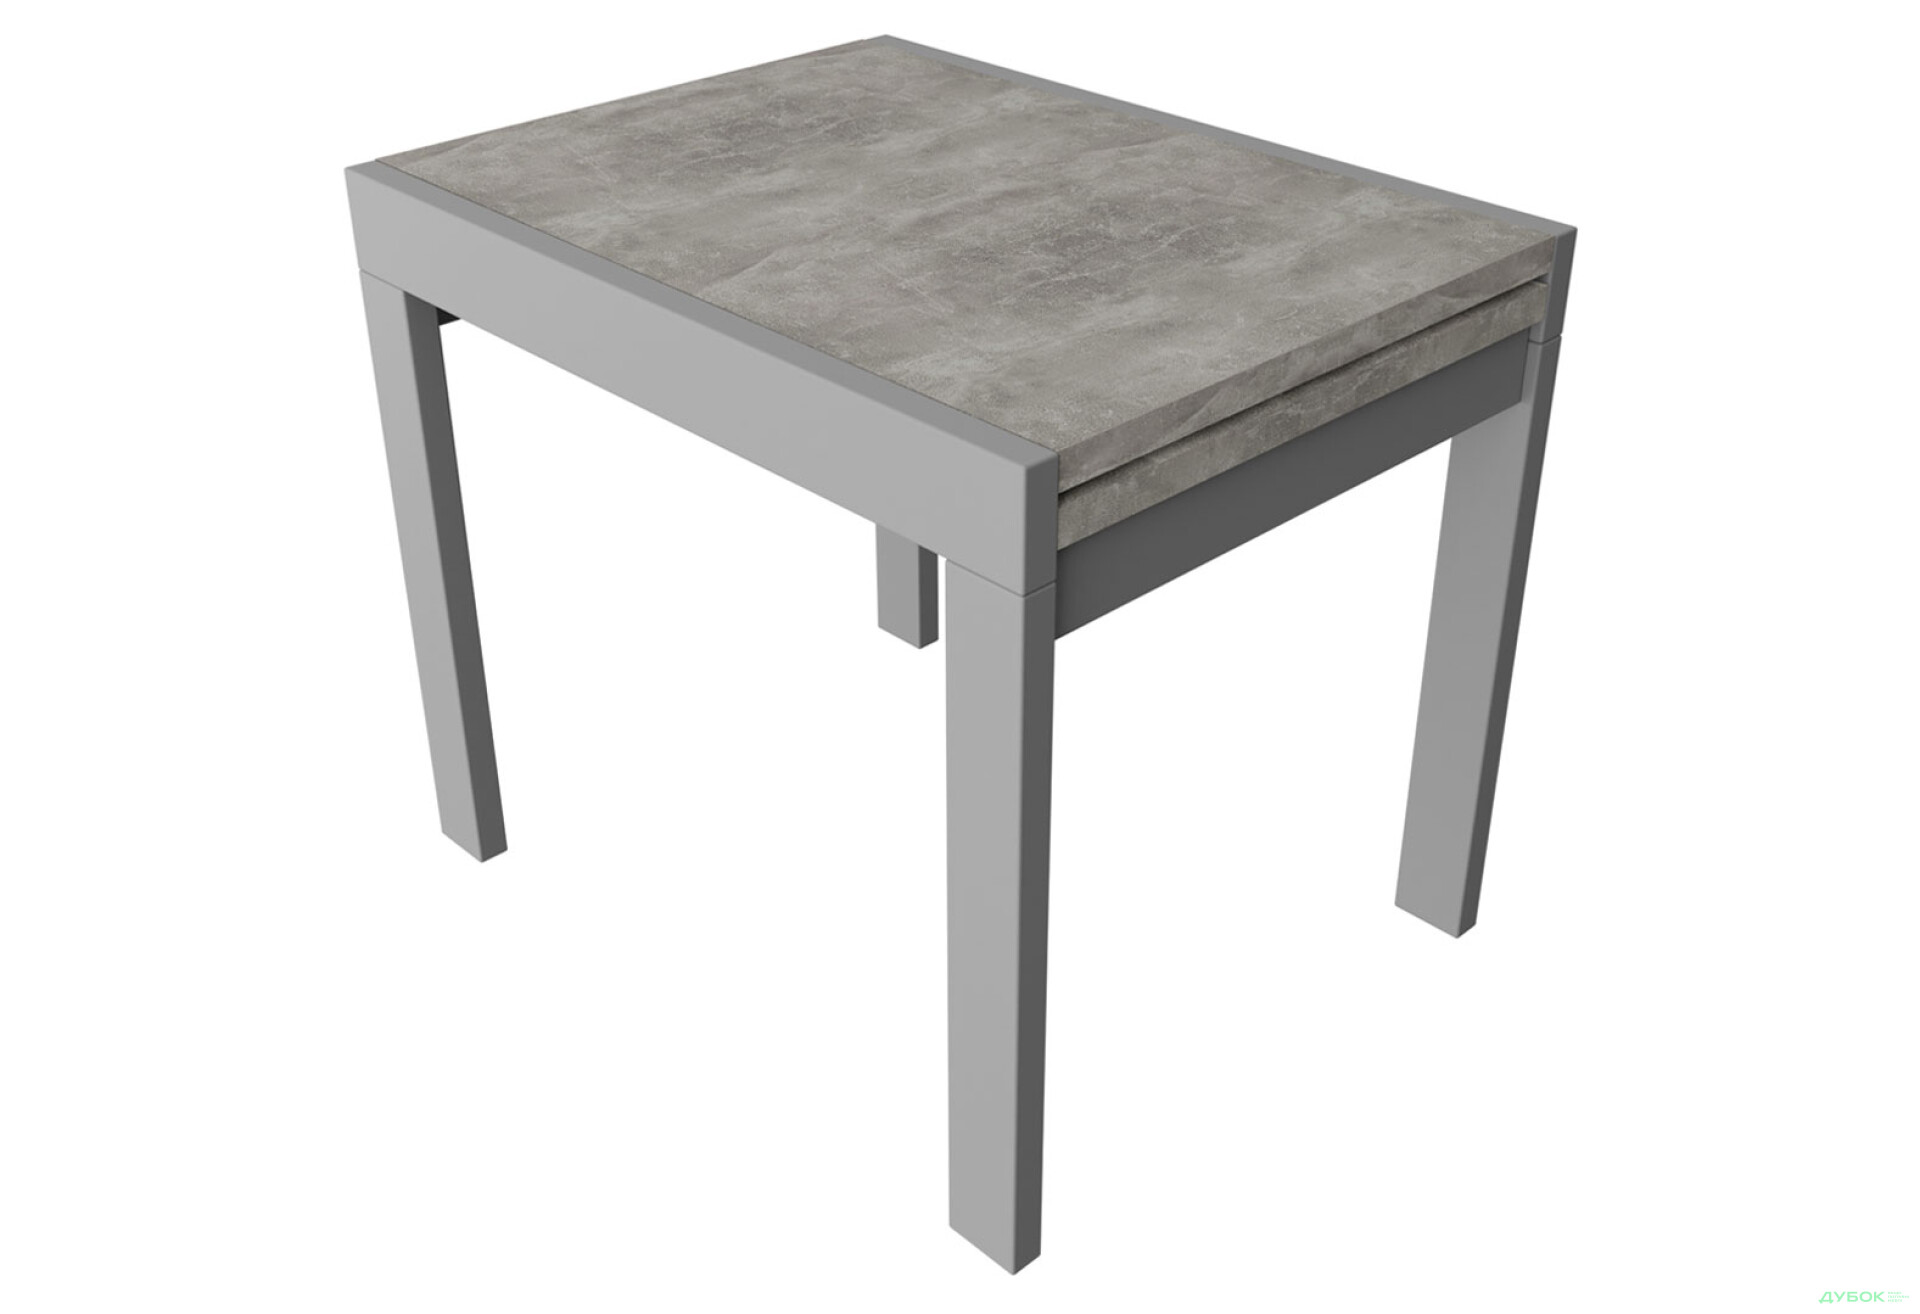 Фото 1 - Стол обеденный Неман Корс 89x69 см розкладний, бетон, ножки серые